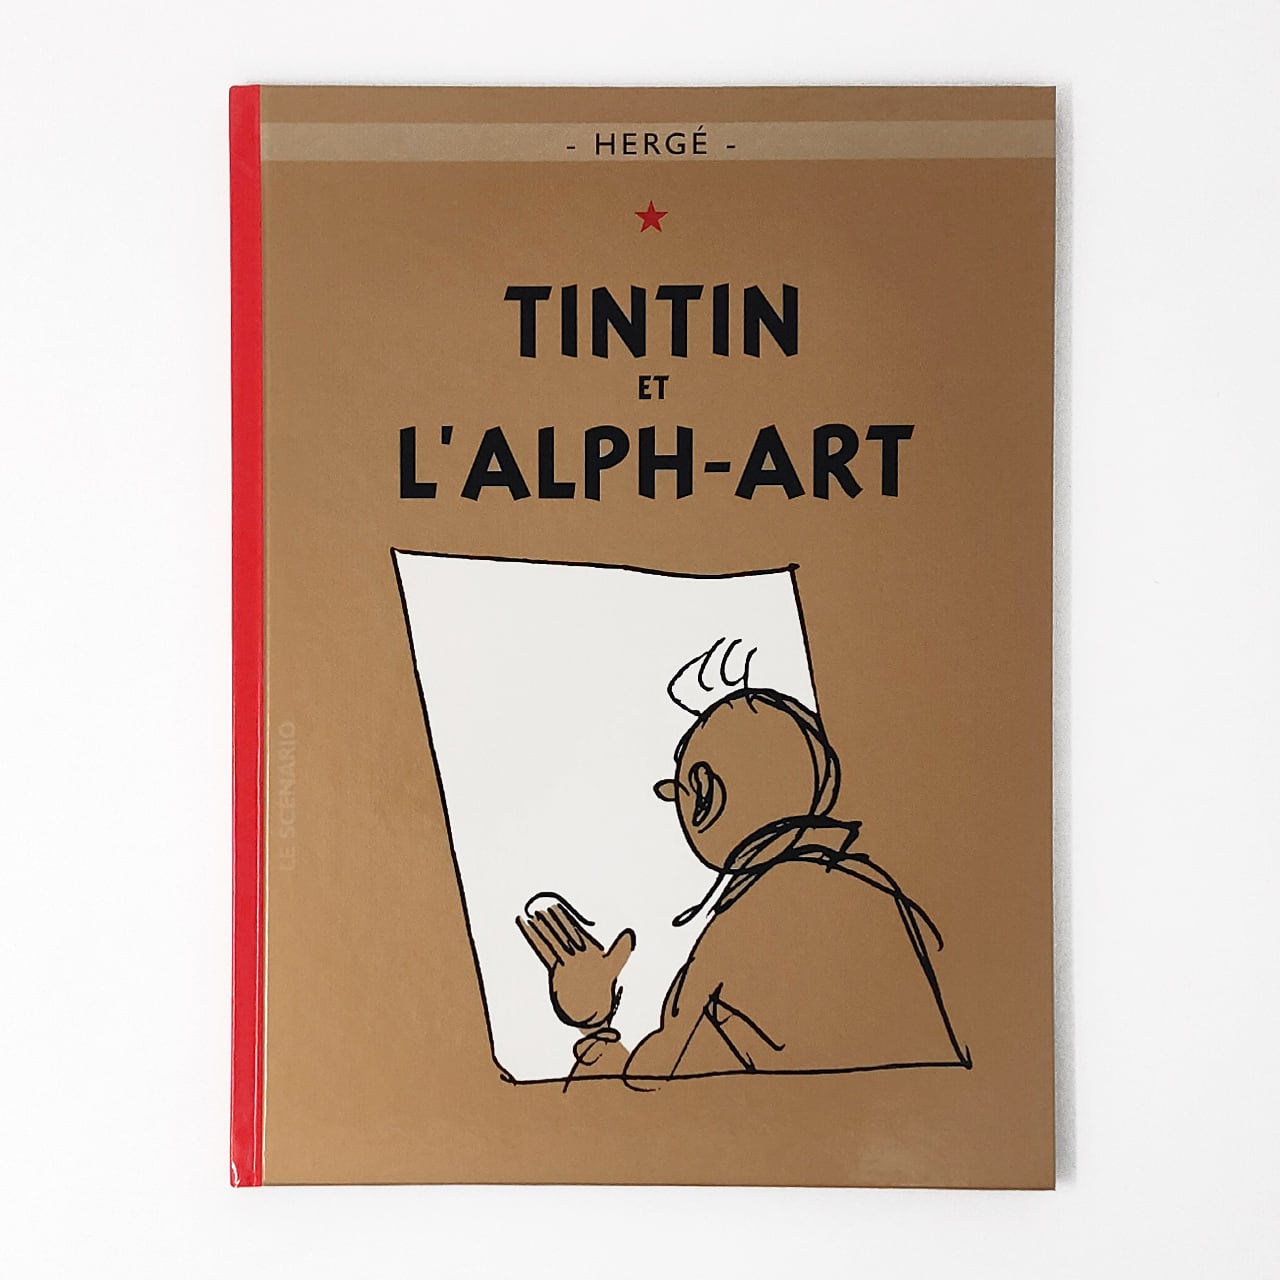 バンドデシネ「Les aventures de Tintin t.24 ; Tintin et l'alph-art（タンタンの冒険）」BD作家Hergé（エルジェ）